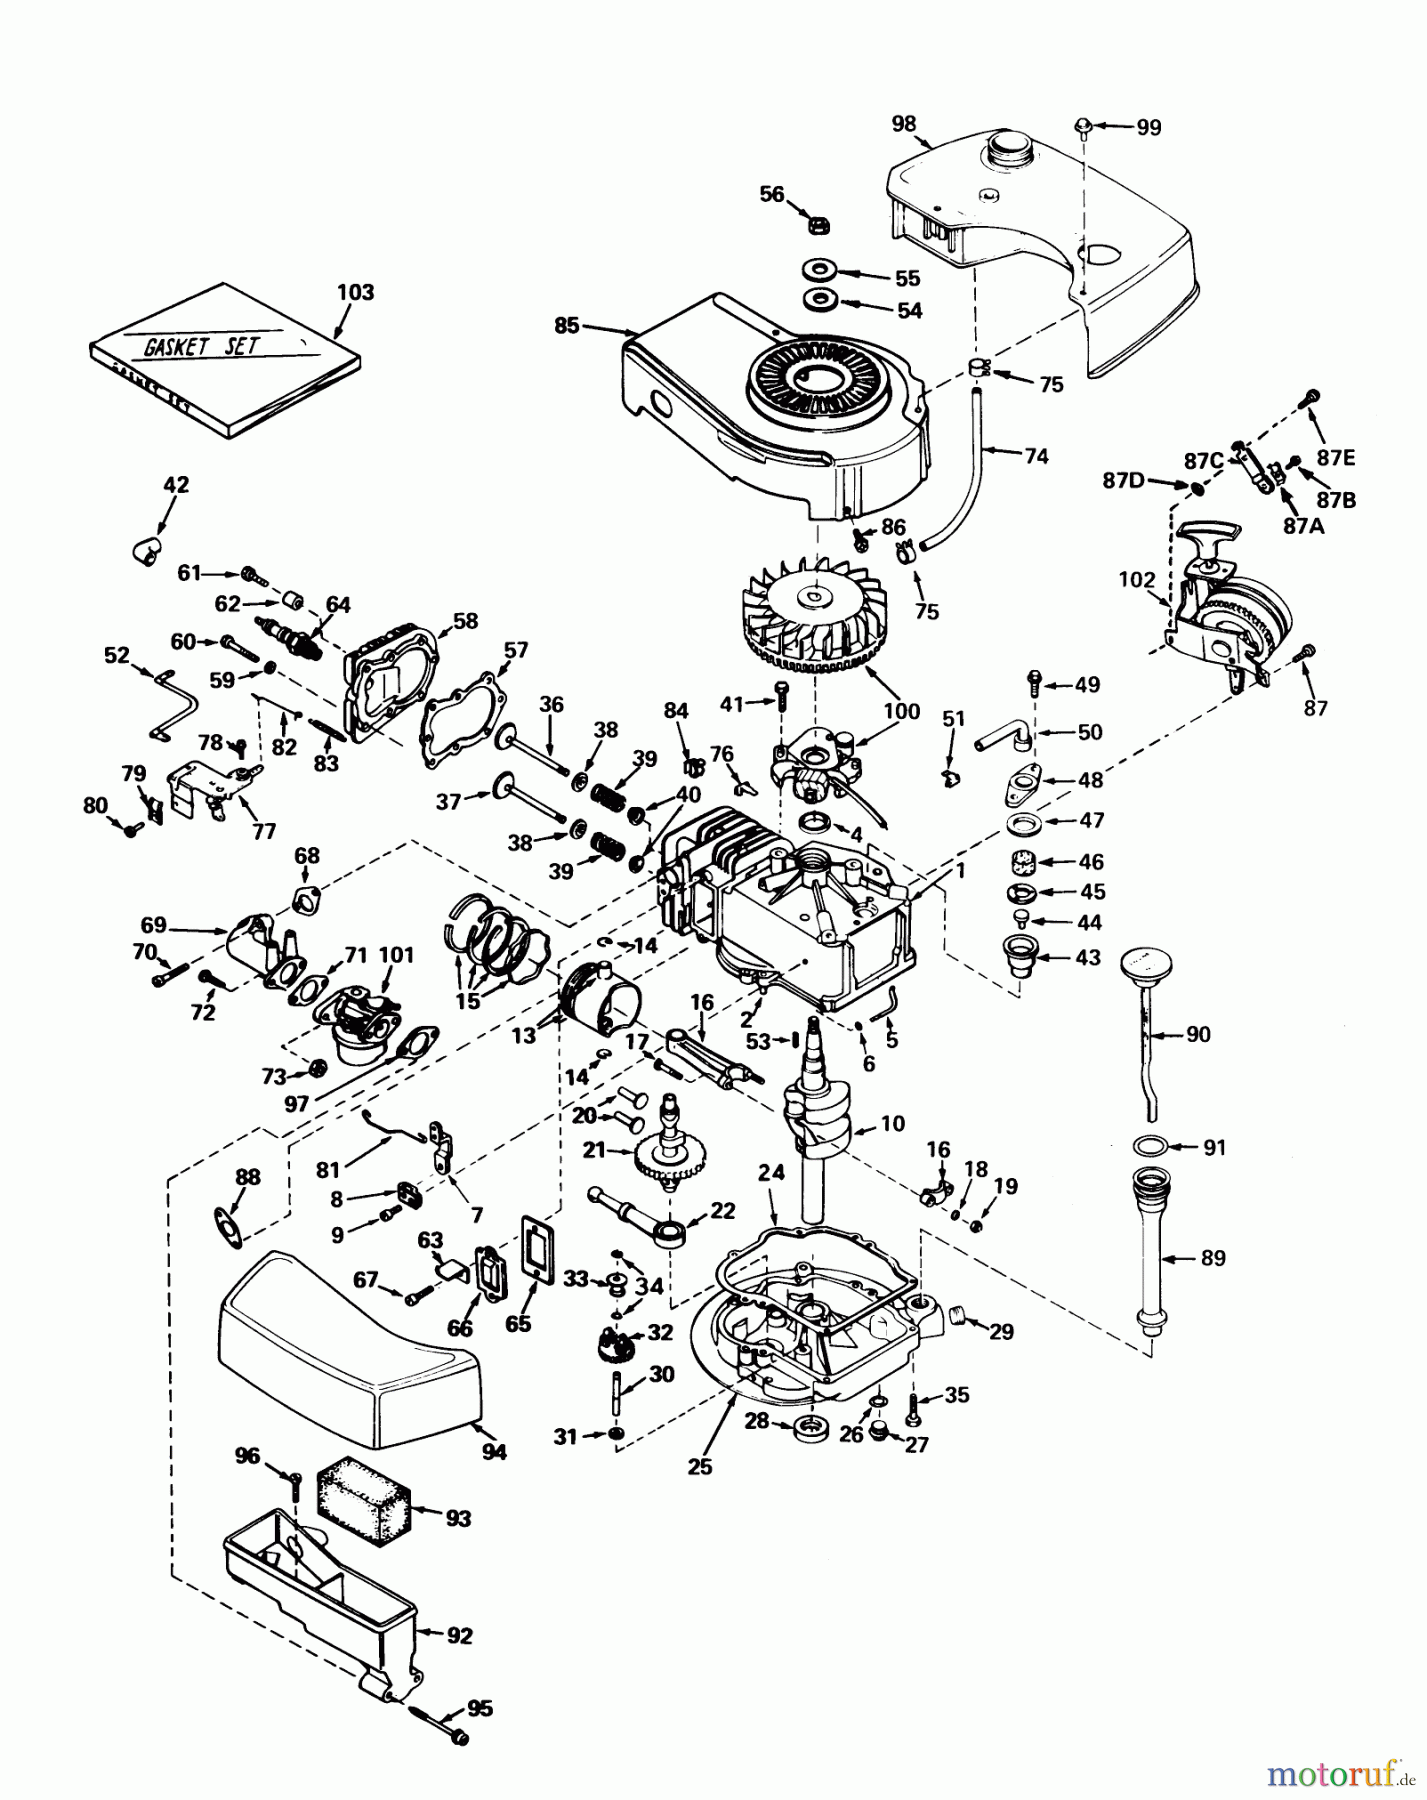  Toro Neu Mowers, Walk-Behind Seite 1 20562 - Toro Lawnmower, 1976 (6000001-6999999) ENGINE TECUMSEH MODEL NO. TNT 100-10045